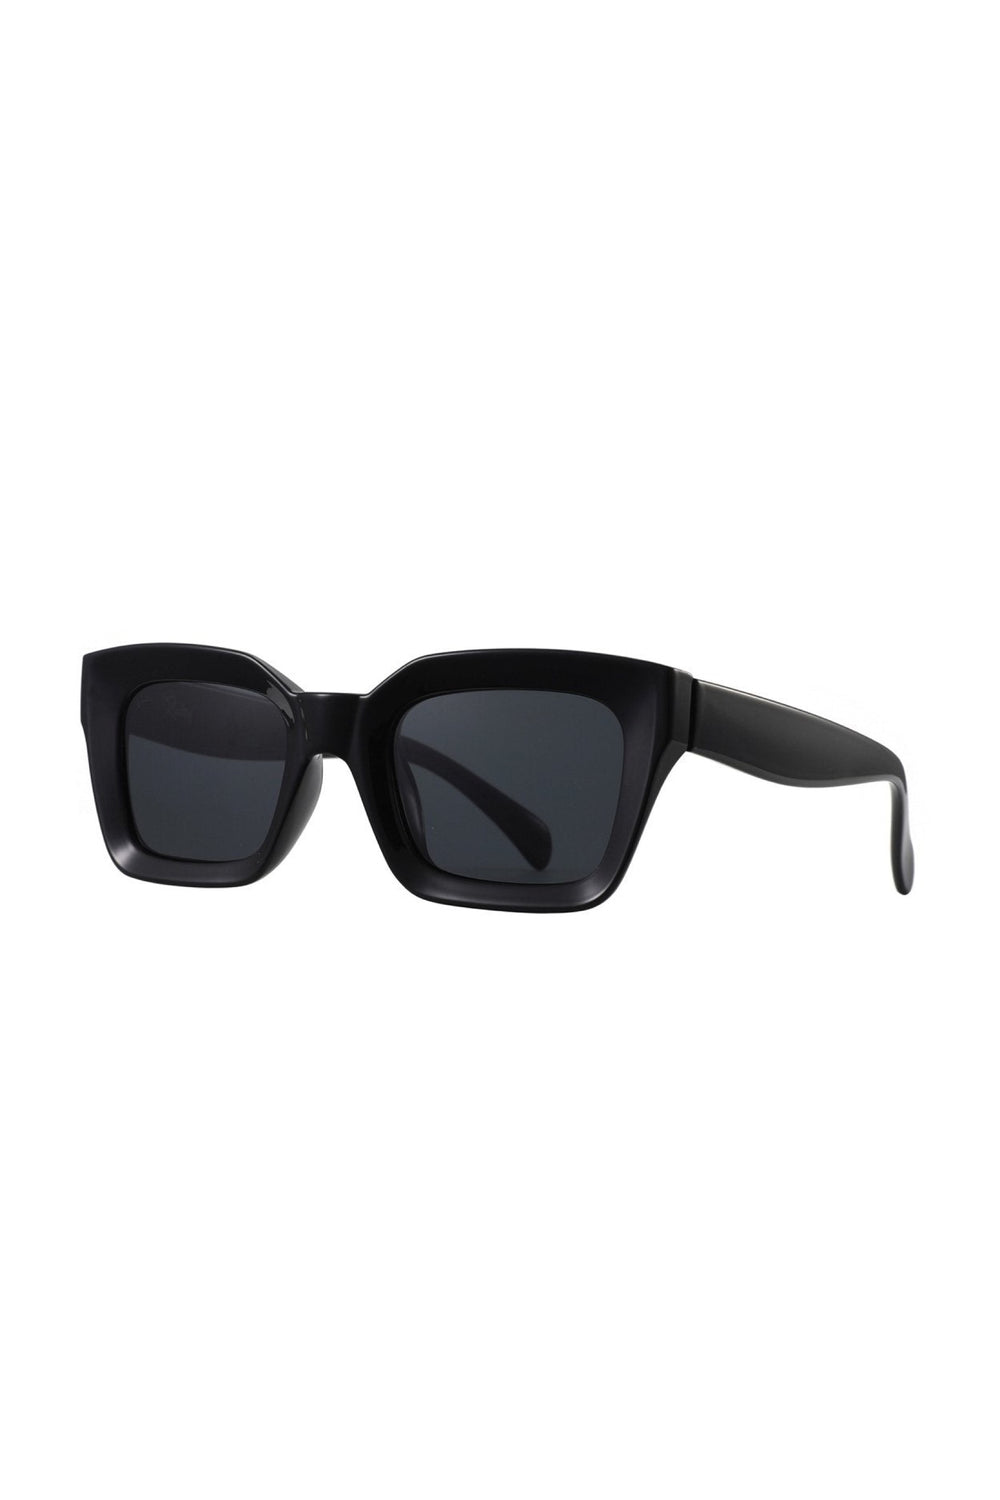 Black Onassis Sunglasses